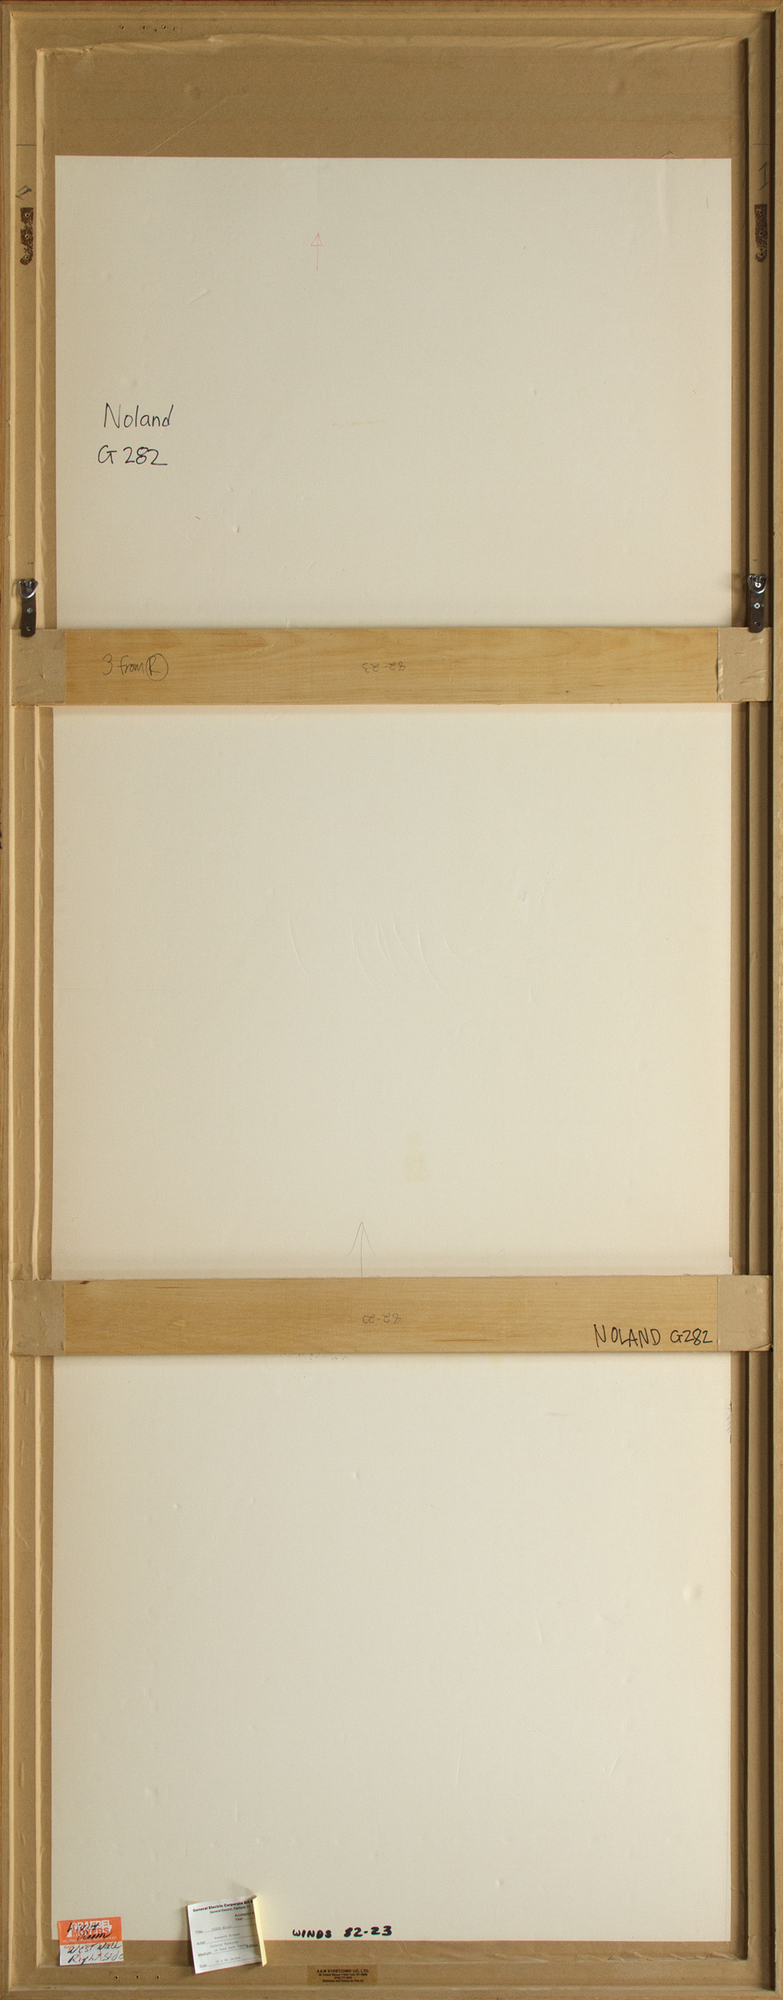 ケネス・ノーランド - 風82-23 - 手作りの紙にモノタイプを塗装 - 86 1/2 x 31 3/8インチ。